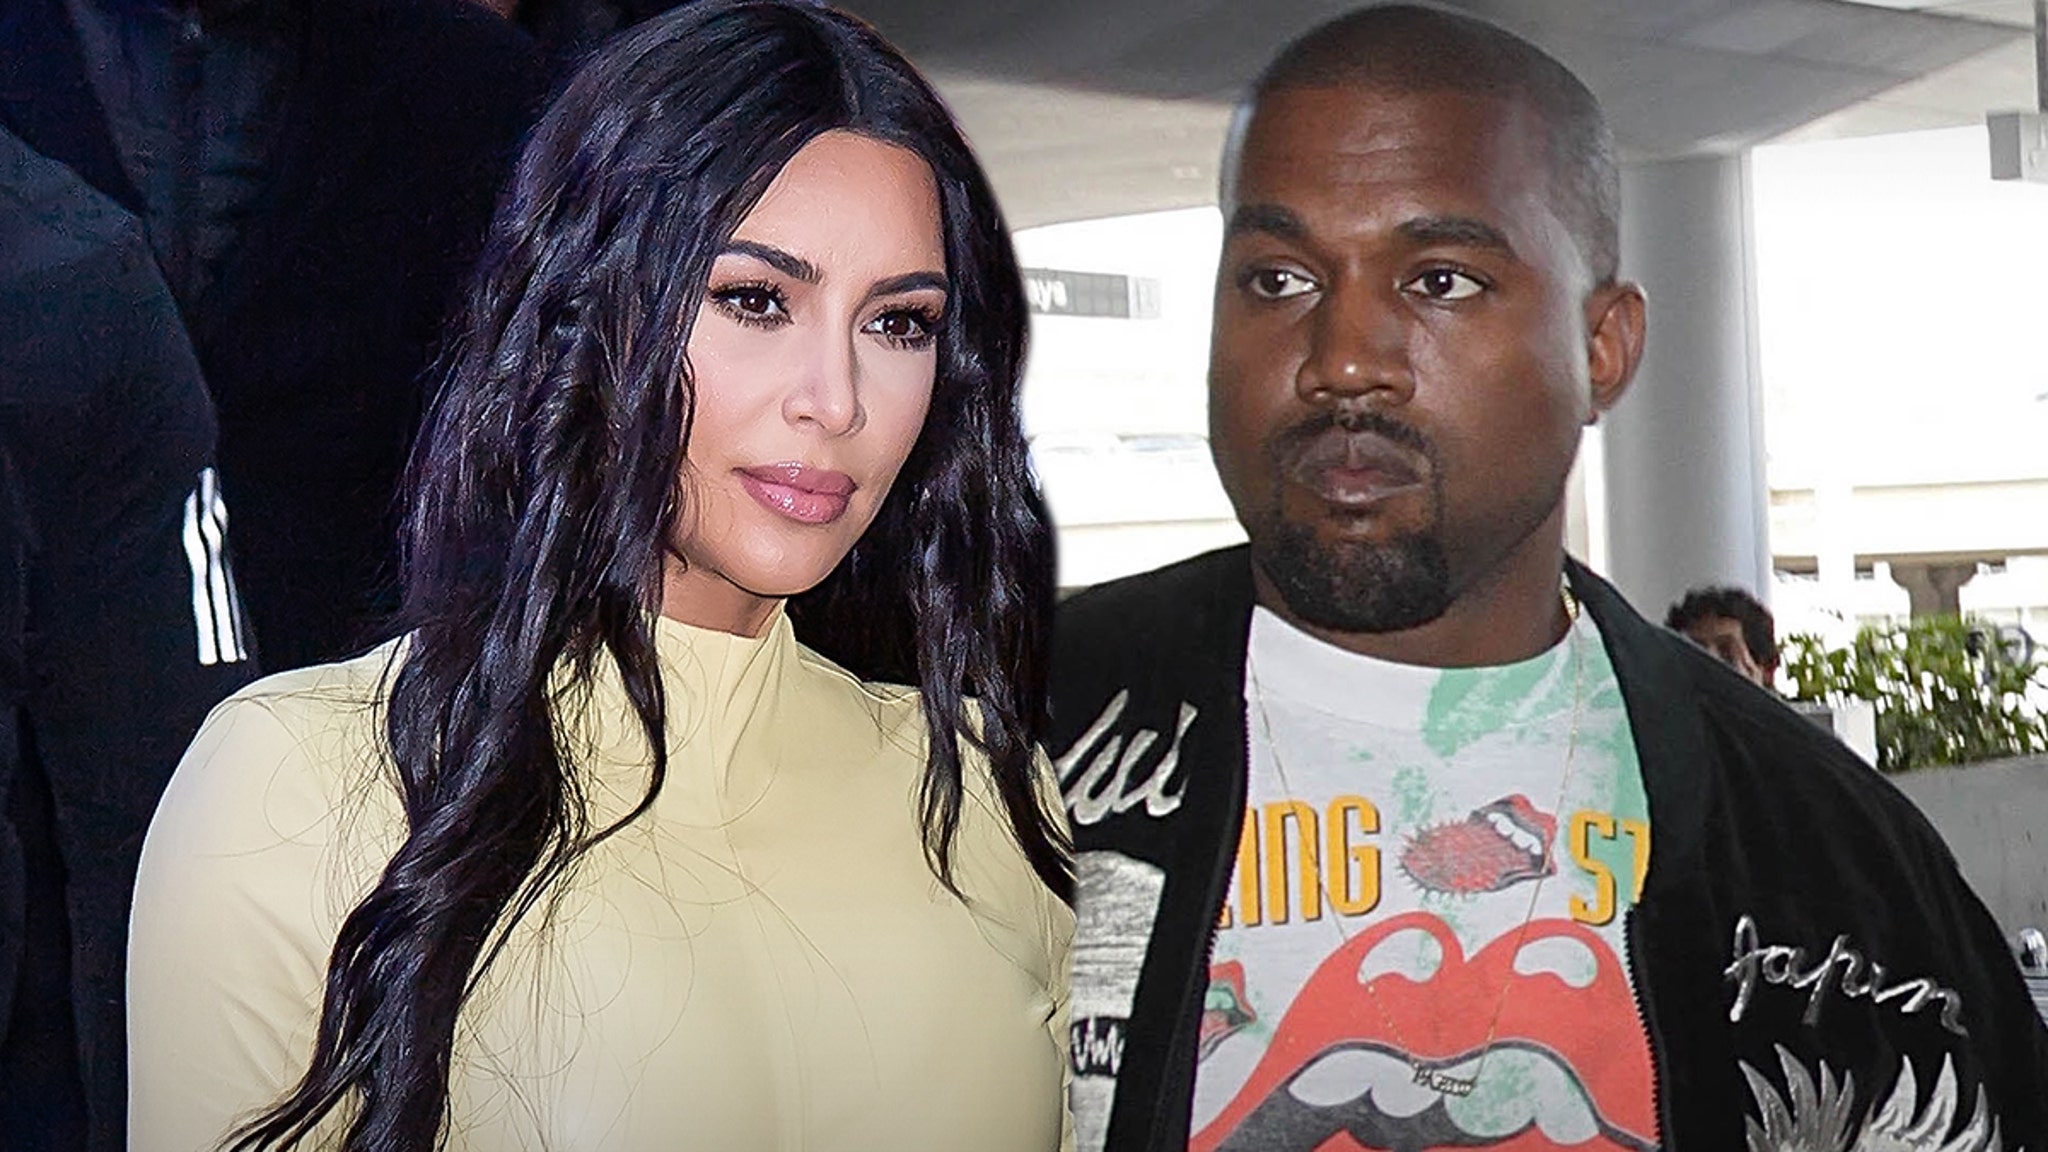 Kim Kardashian Says Kanye West's Instagram Posts Caused 'Emotional Distress'